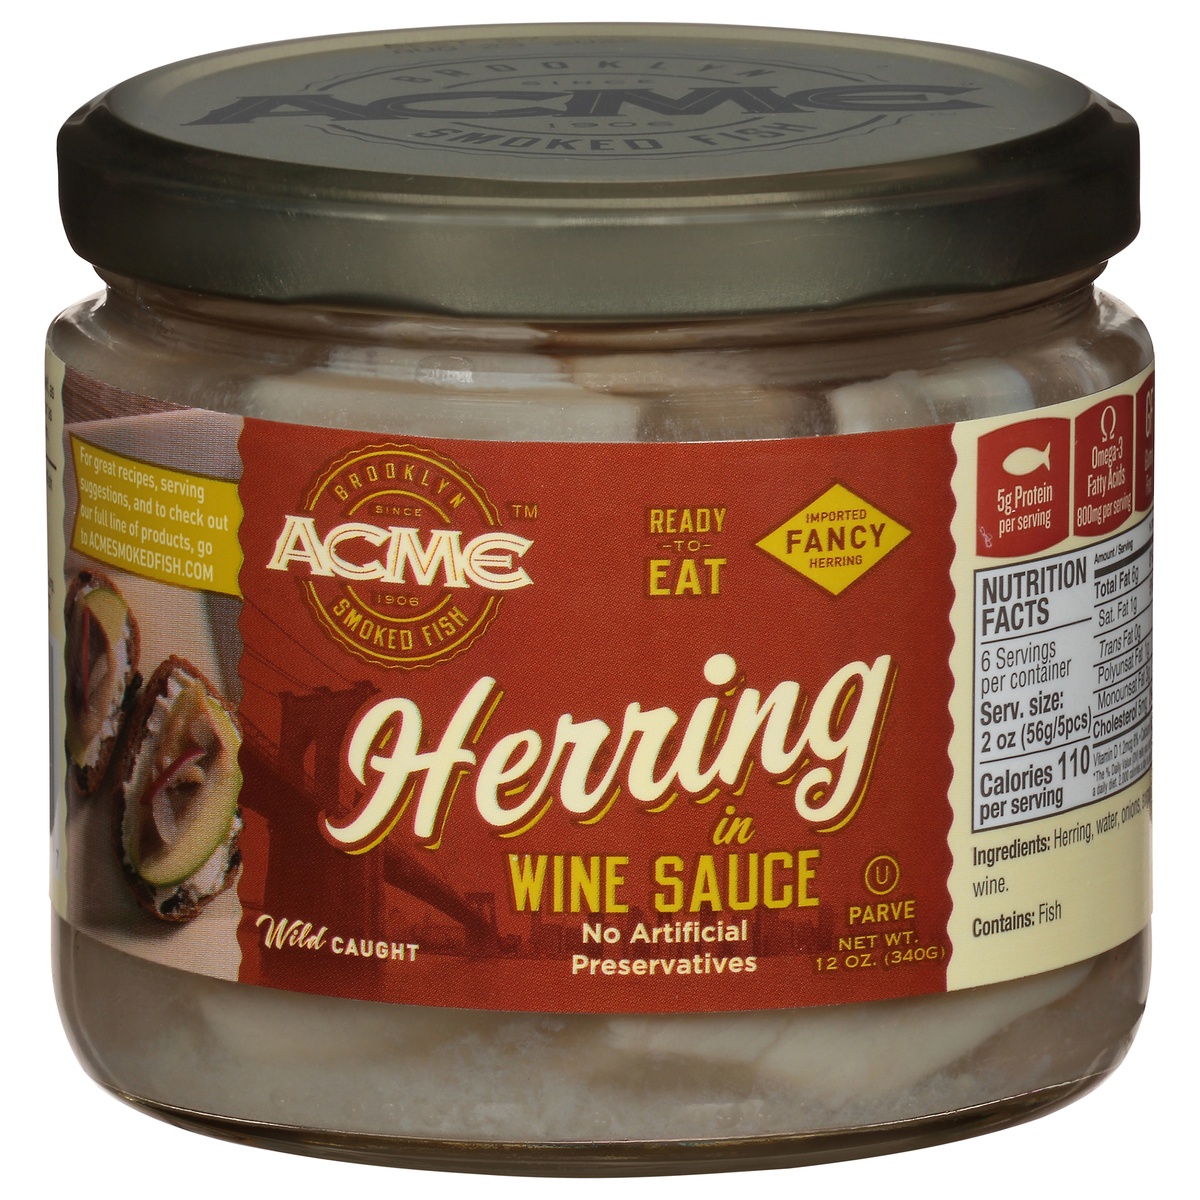 slide 1 of 1, ACME Herring In Wine Sauce, 12 oz